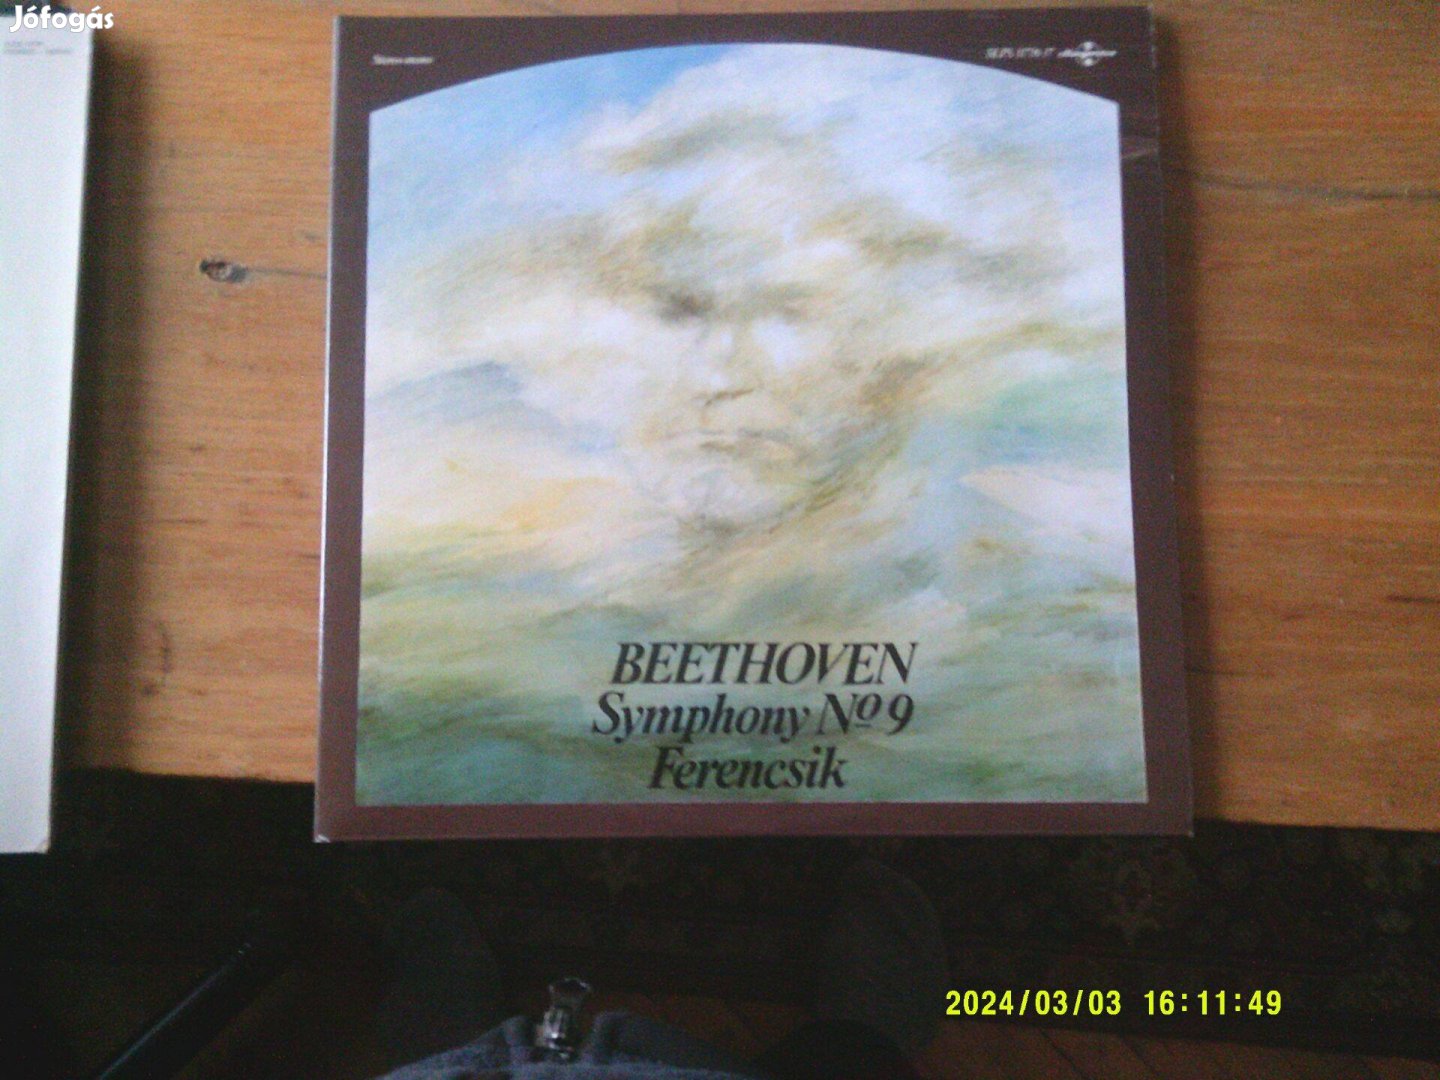 Beethowen szimfohiál Bakelit LP 1500/ db Ferencsik